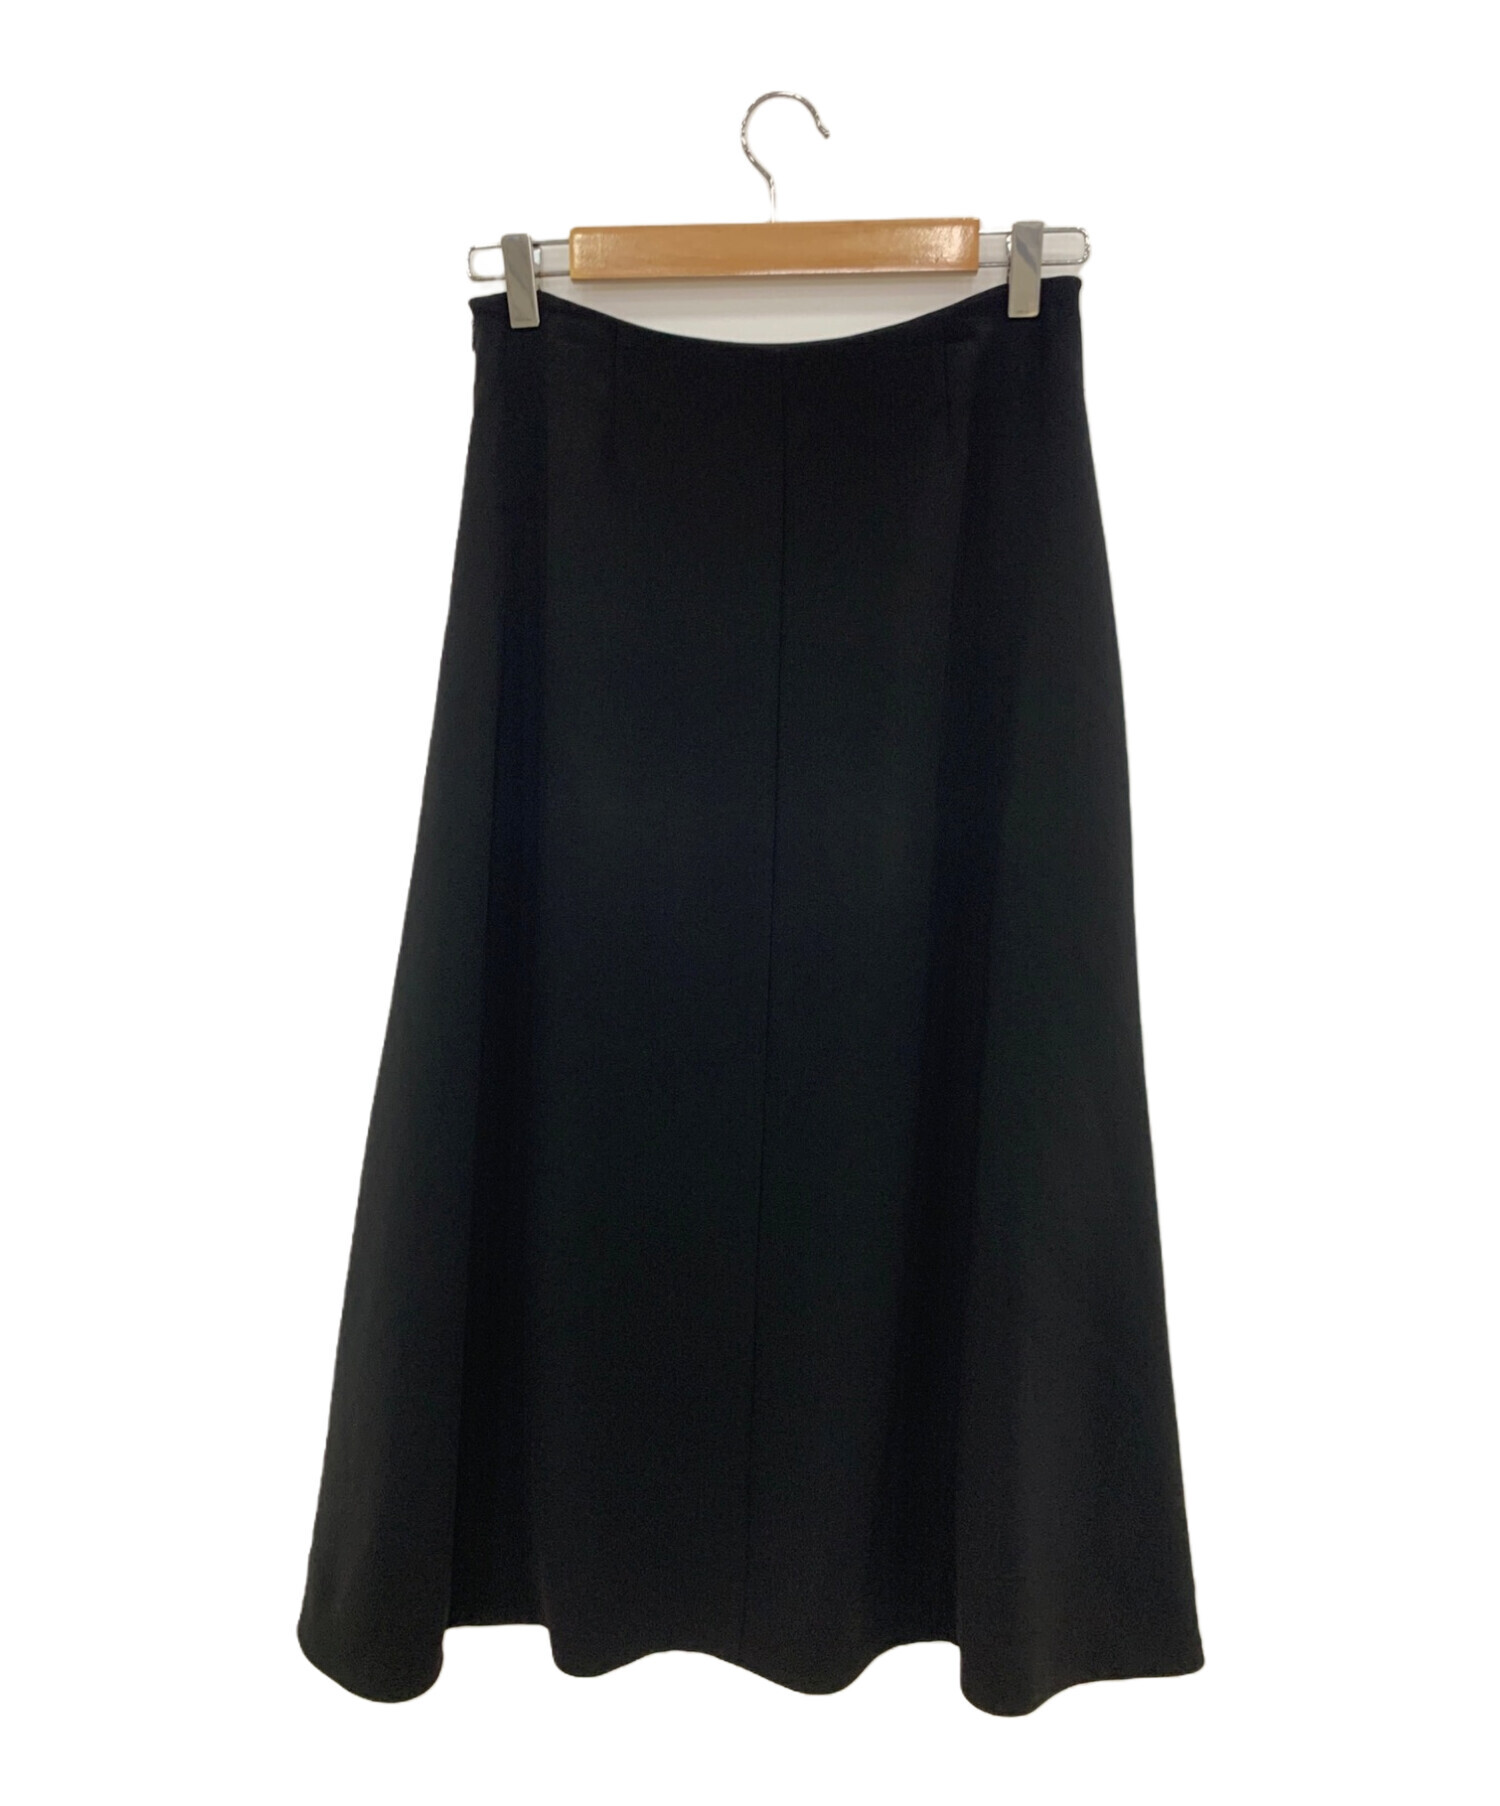 MUSE de Deuxieme Classe (ミューズ ドゥーズィエム クラス) DOUBLE CLOTH フレア スカート ブラック サイズ:34